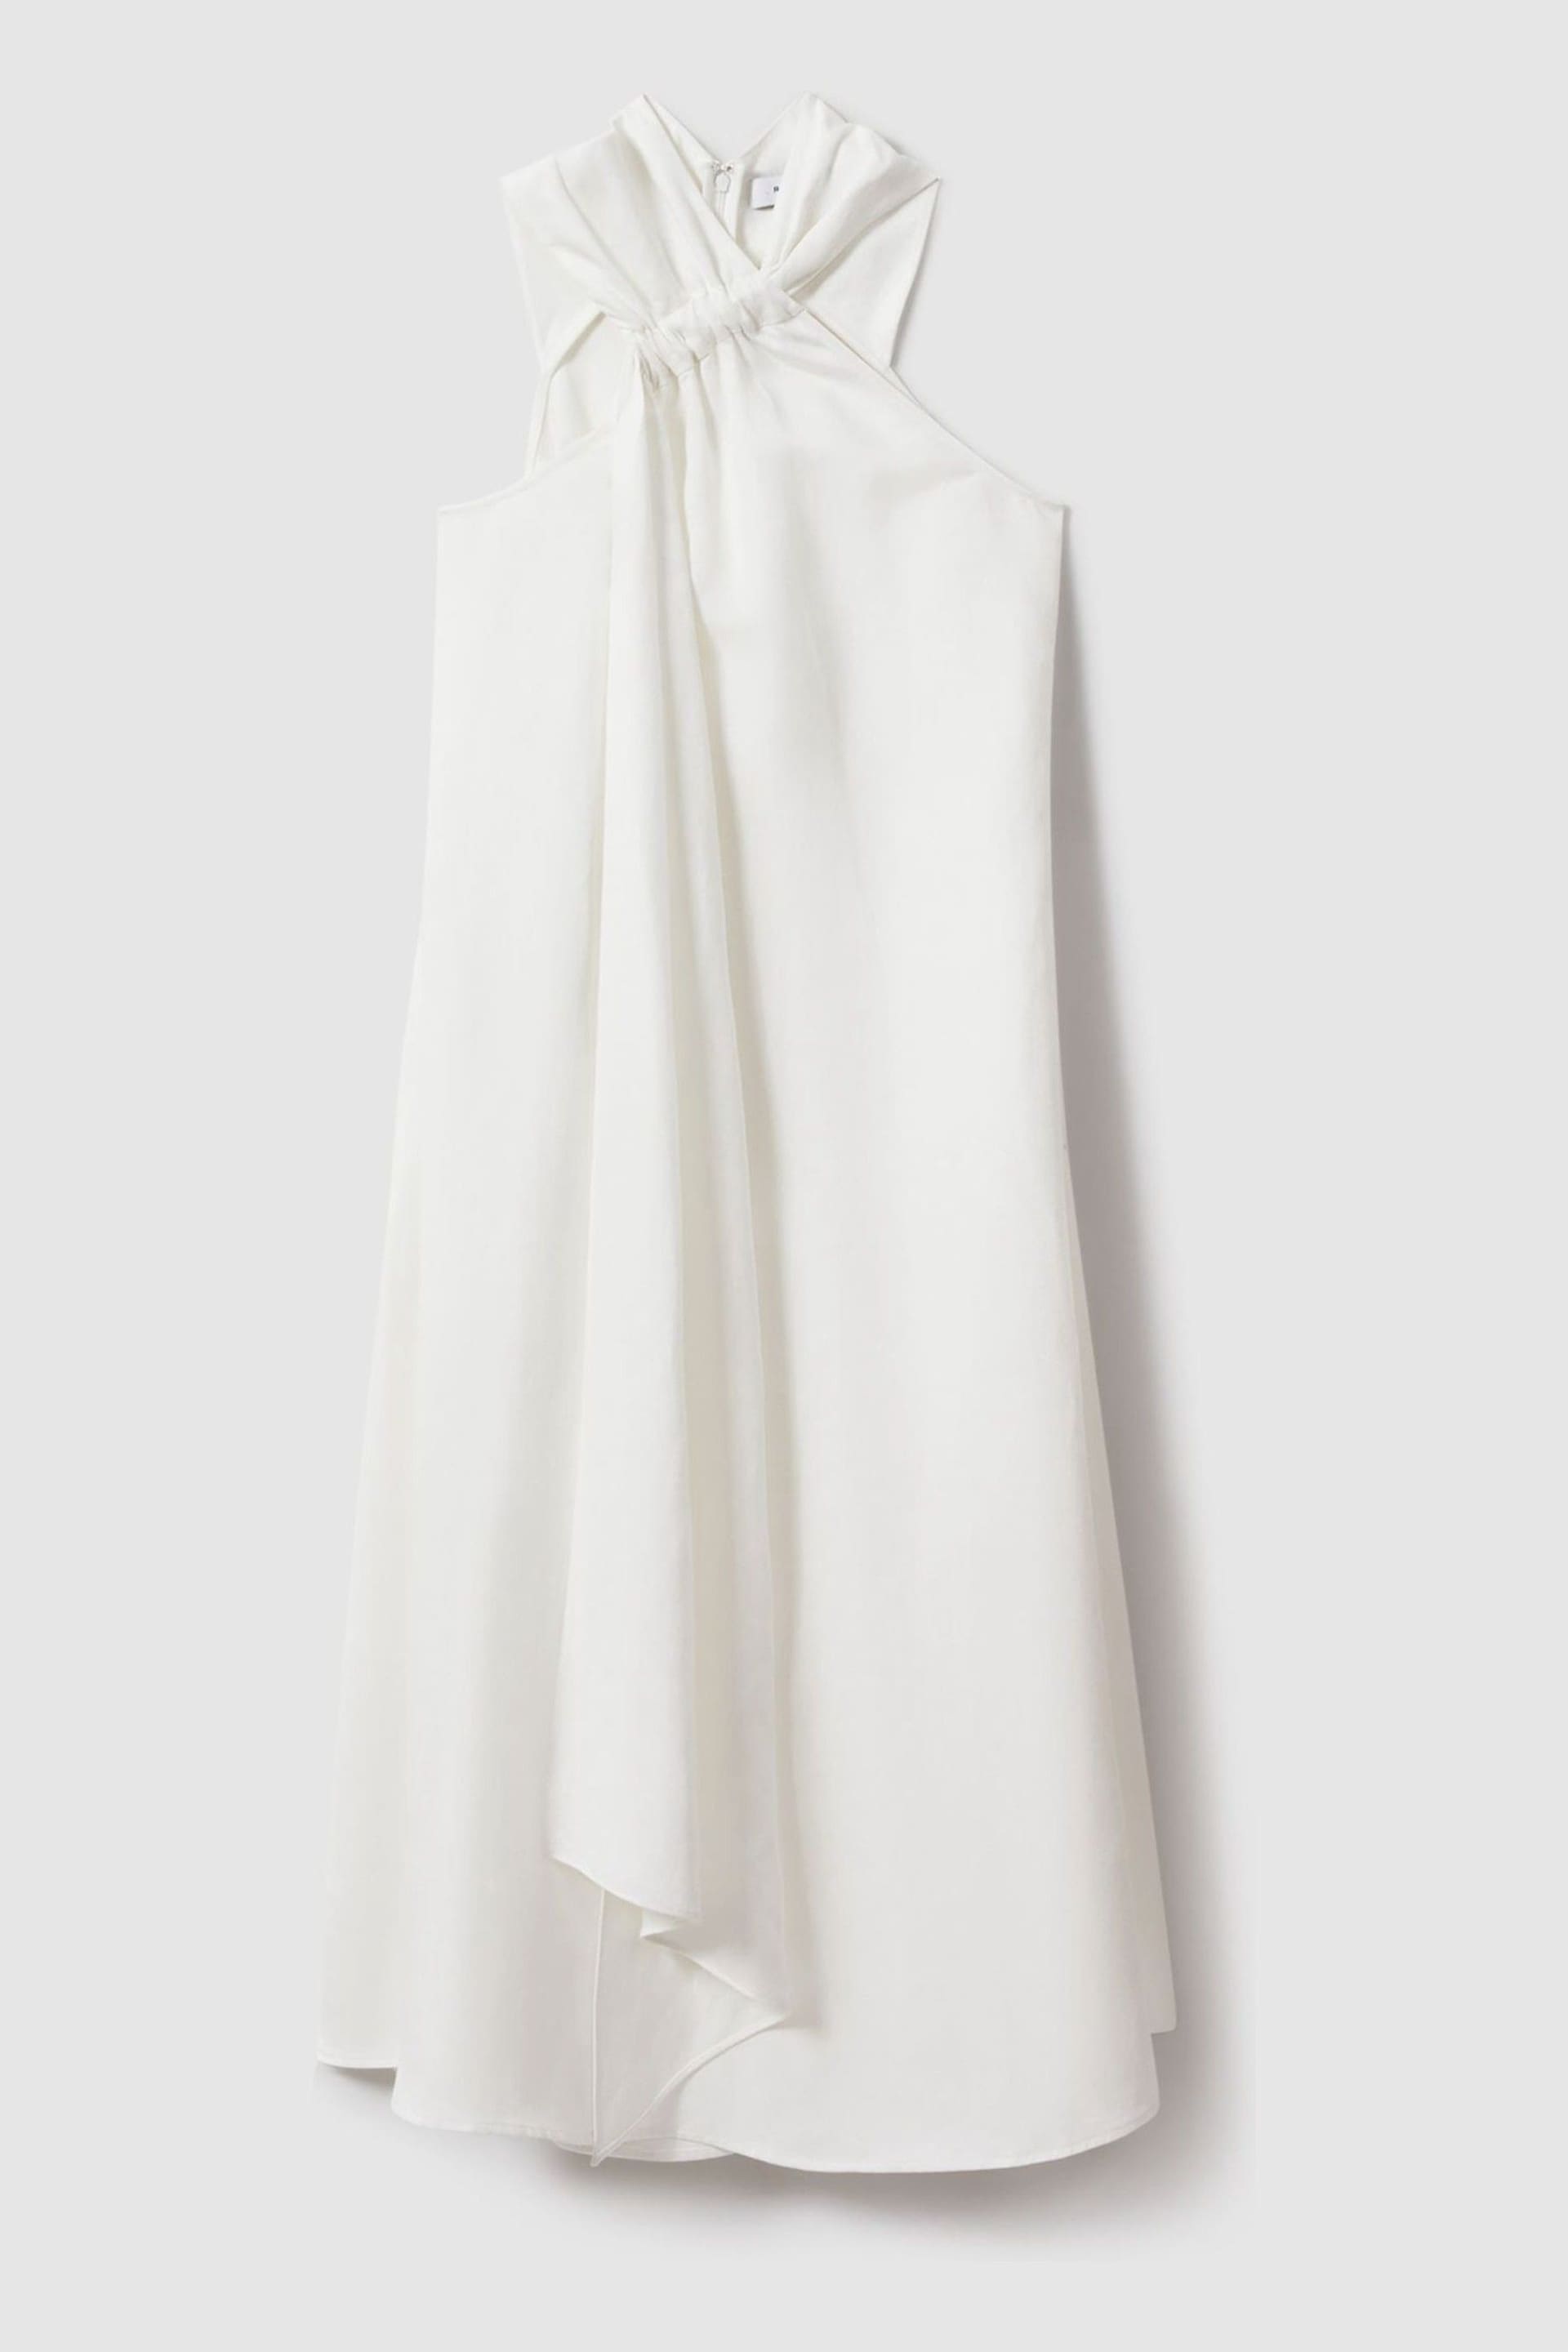 Reiss White Cosette Linen Blend Drape Midi Dress - Image 2 of 5